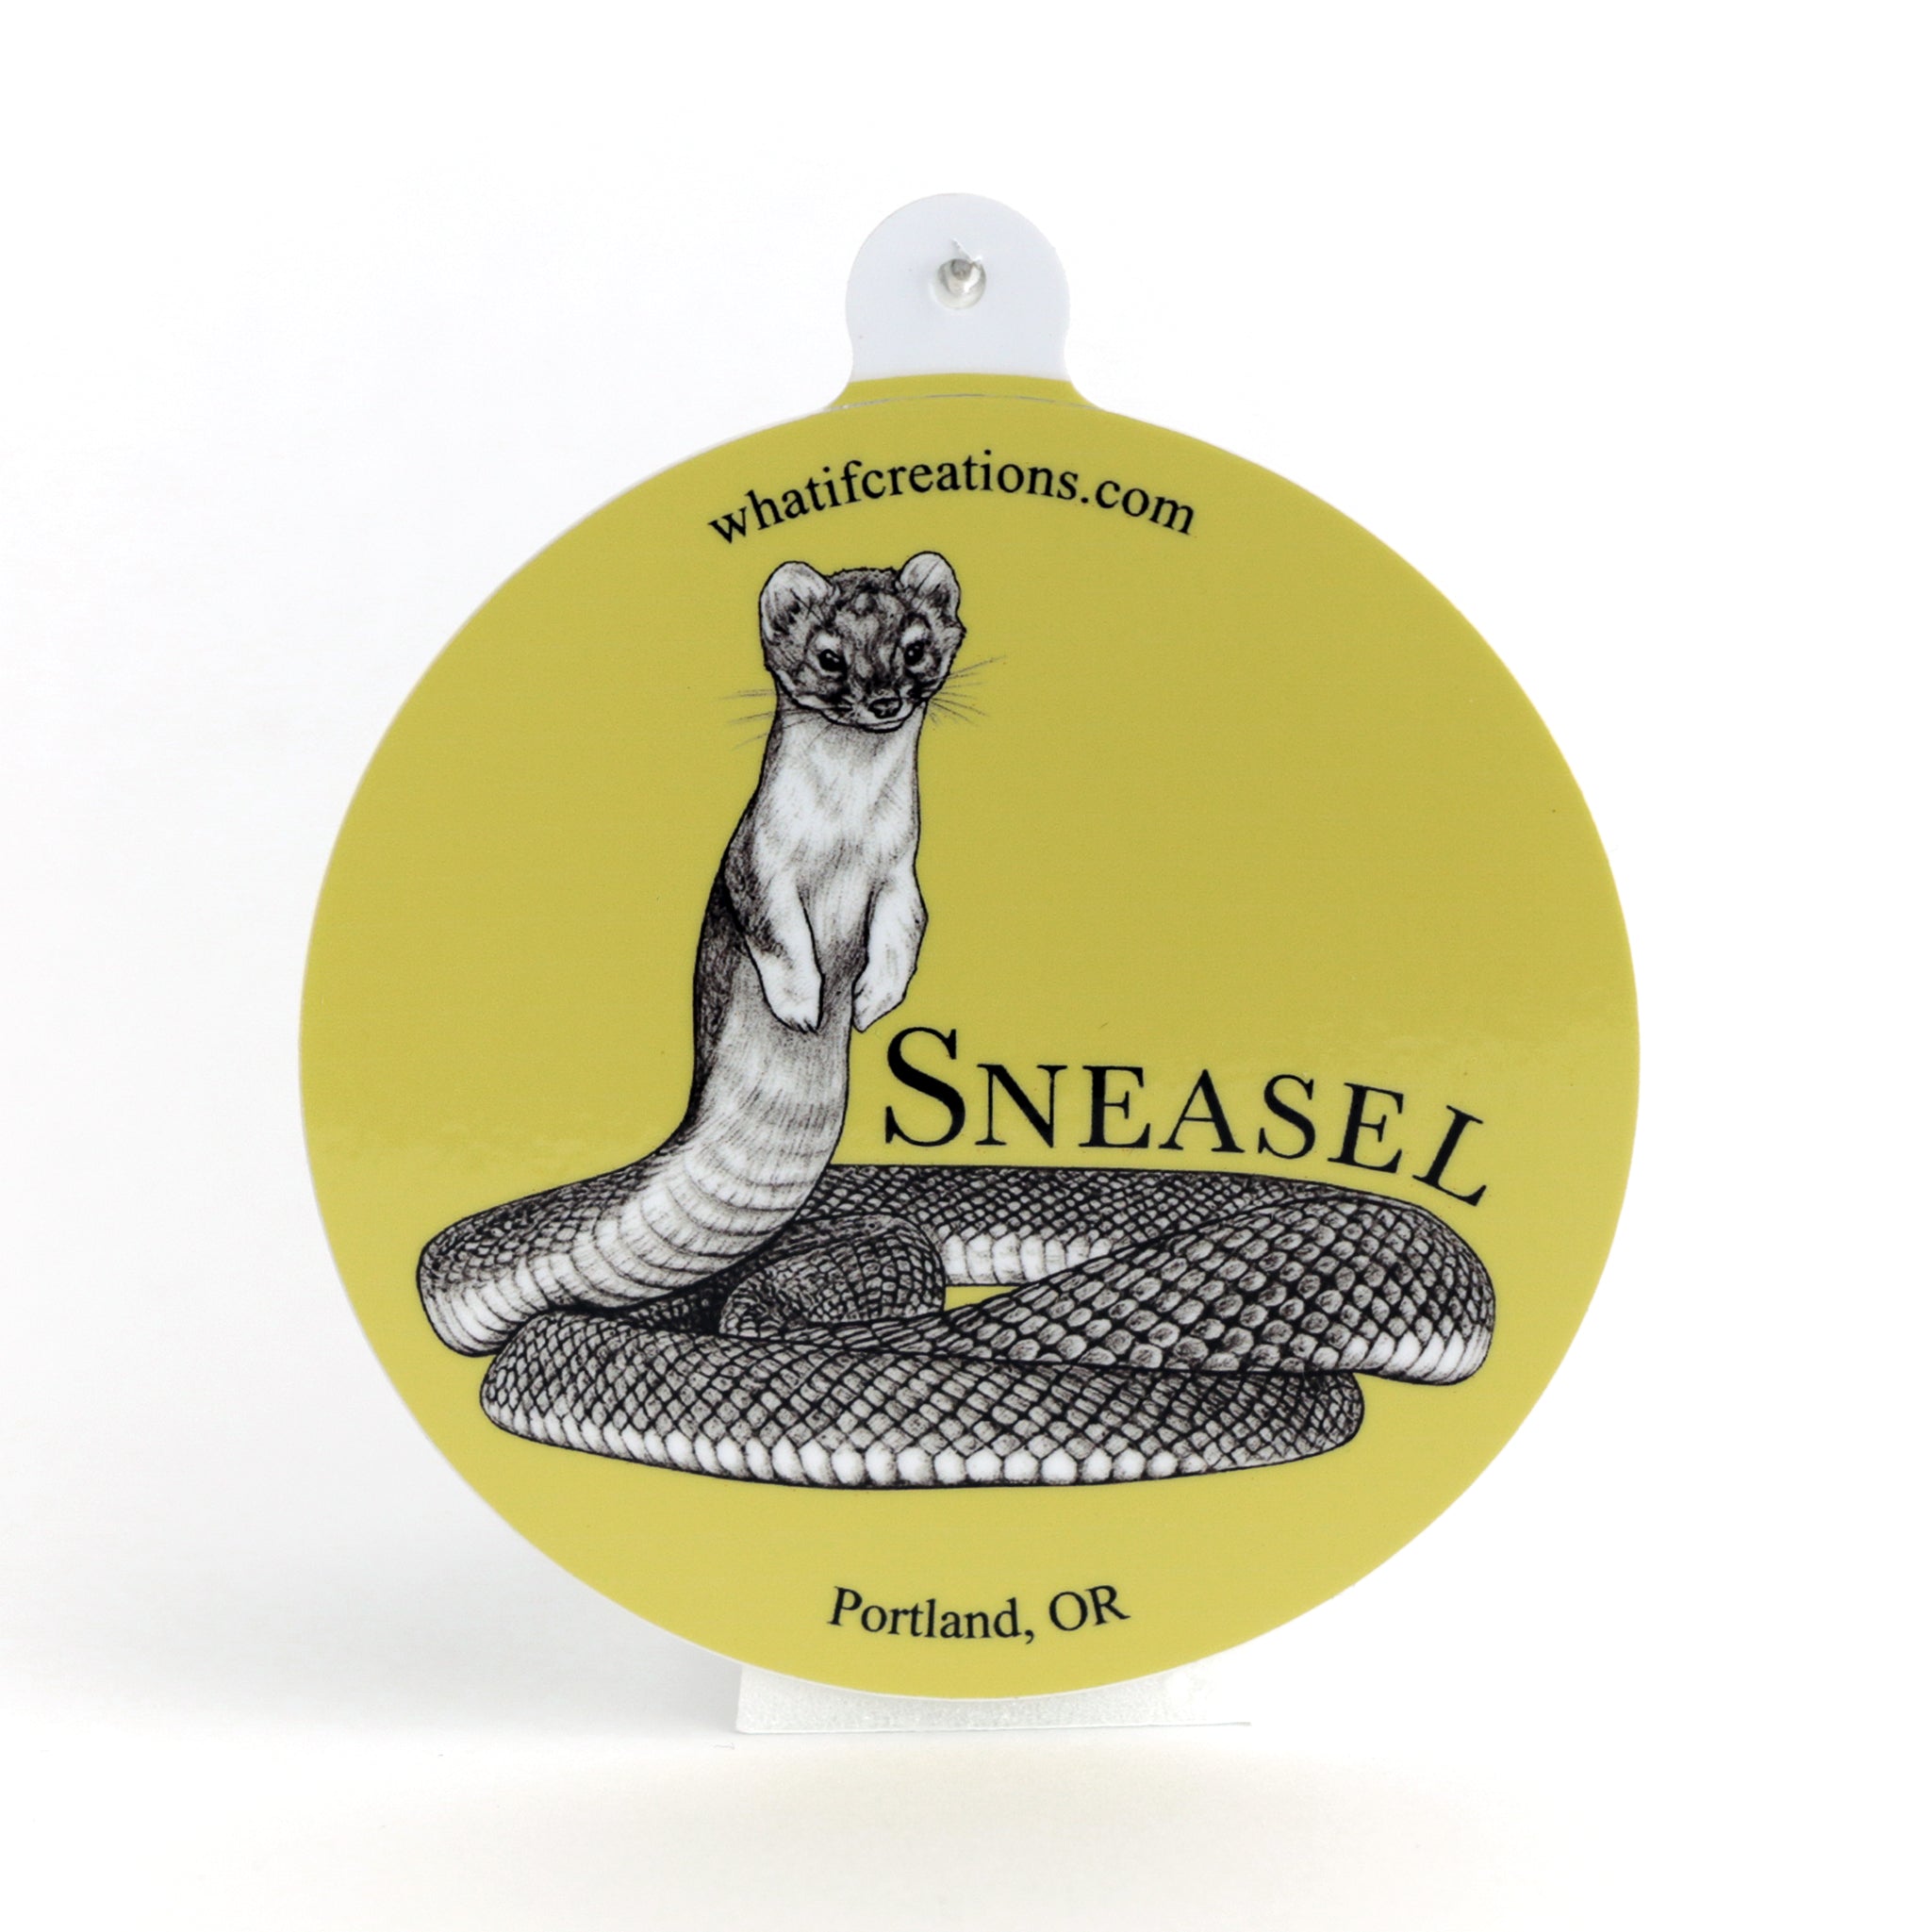 Sneasel | Snake + Weasel Hybrid Animal | 3" Vinyl Sticker